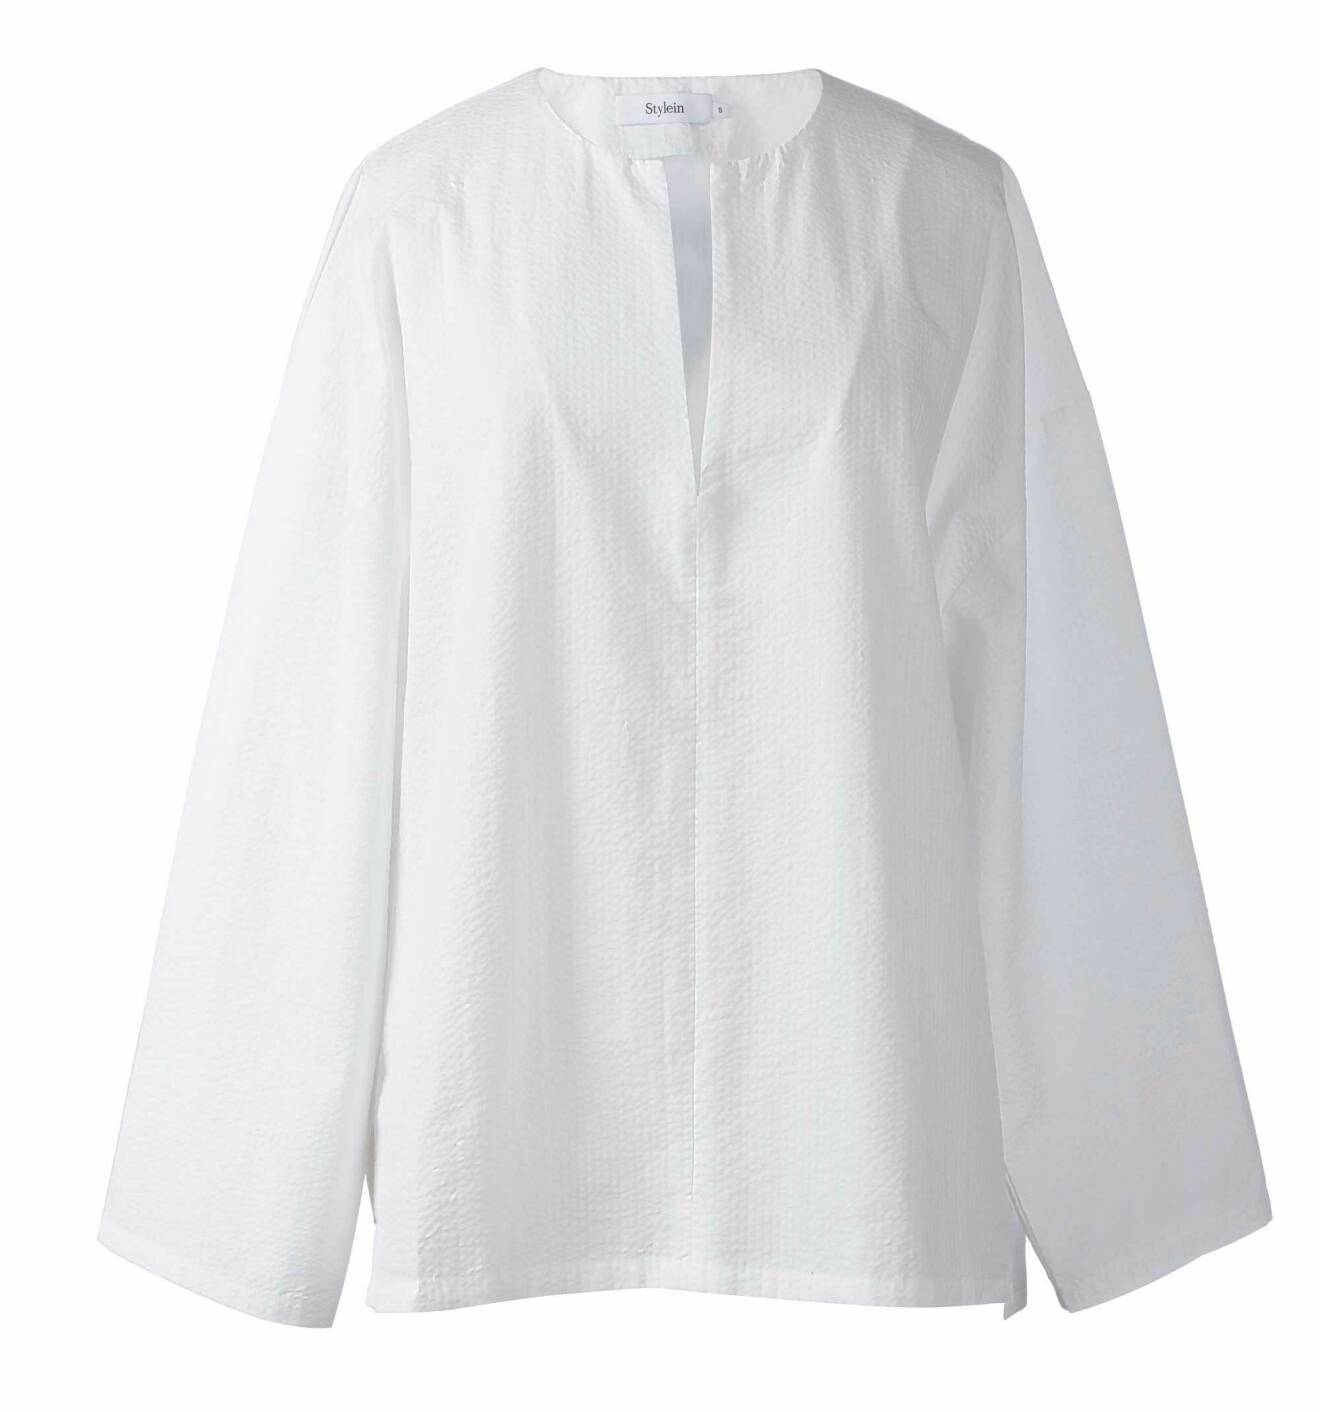 Skjorta i bomull, XS–XL, 1 699 kr, Stylein.